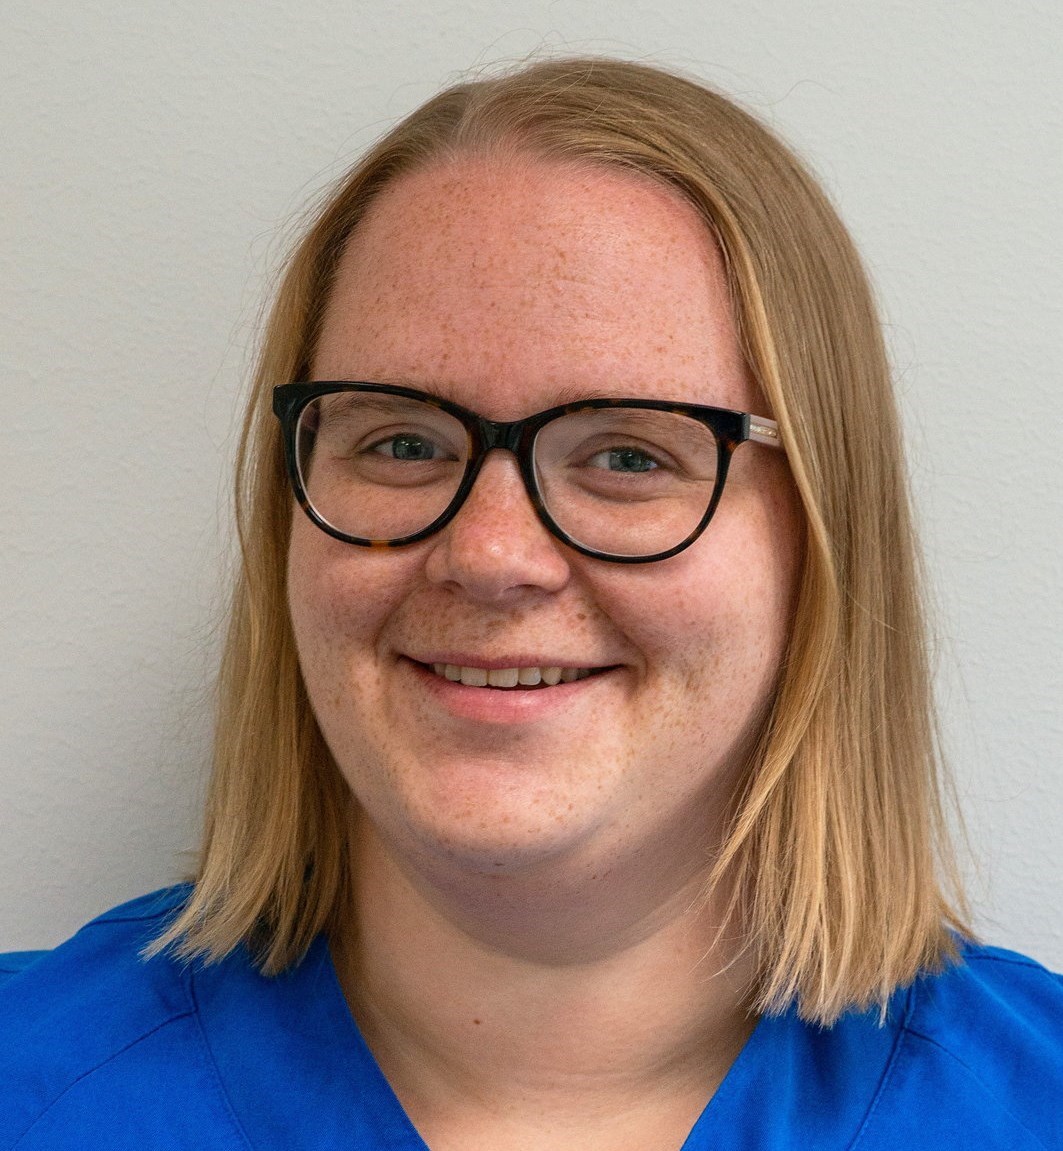 Kristina Hjalmarsson är tandsköterska på Mun-H-Center